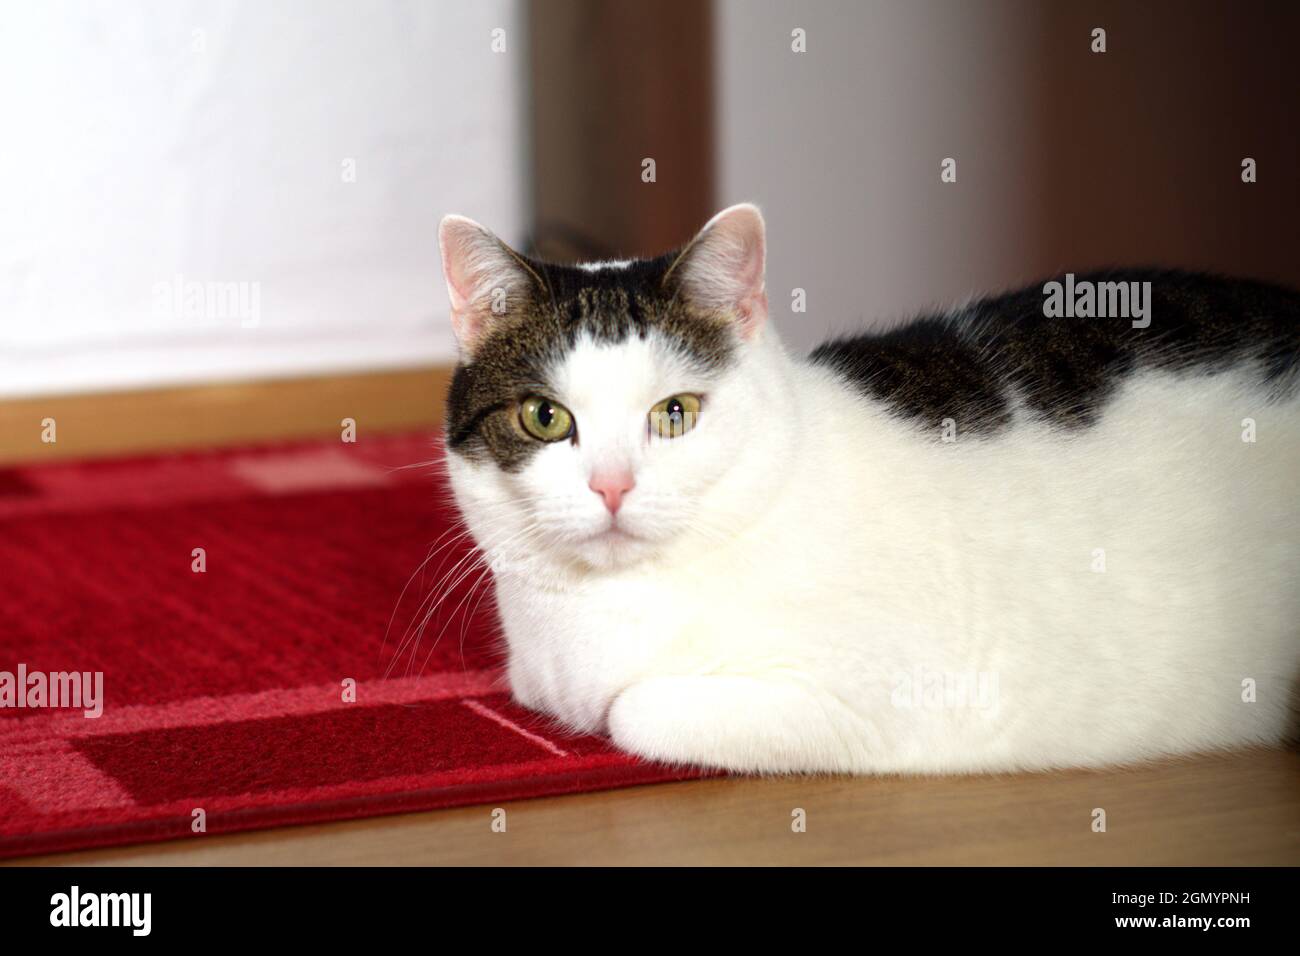 Un gato se encuentra relajado en una alfombra y mira a la cámara Foto de stock